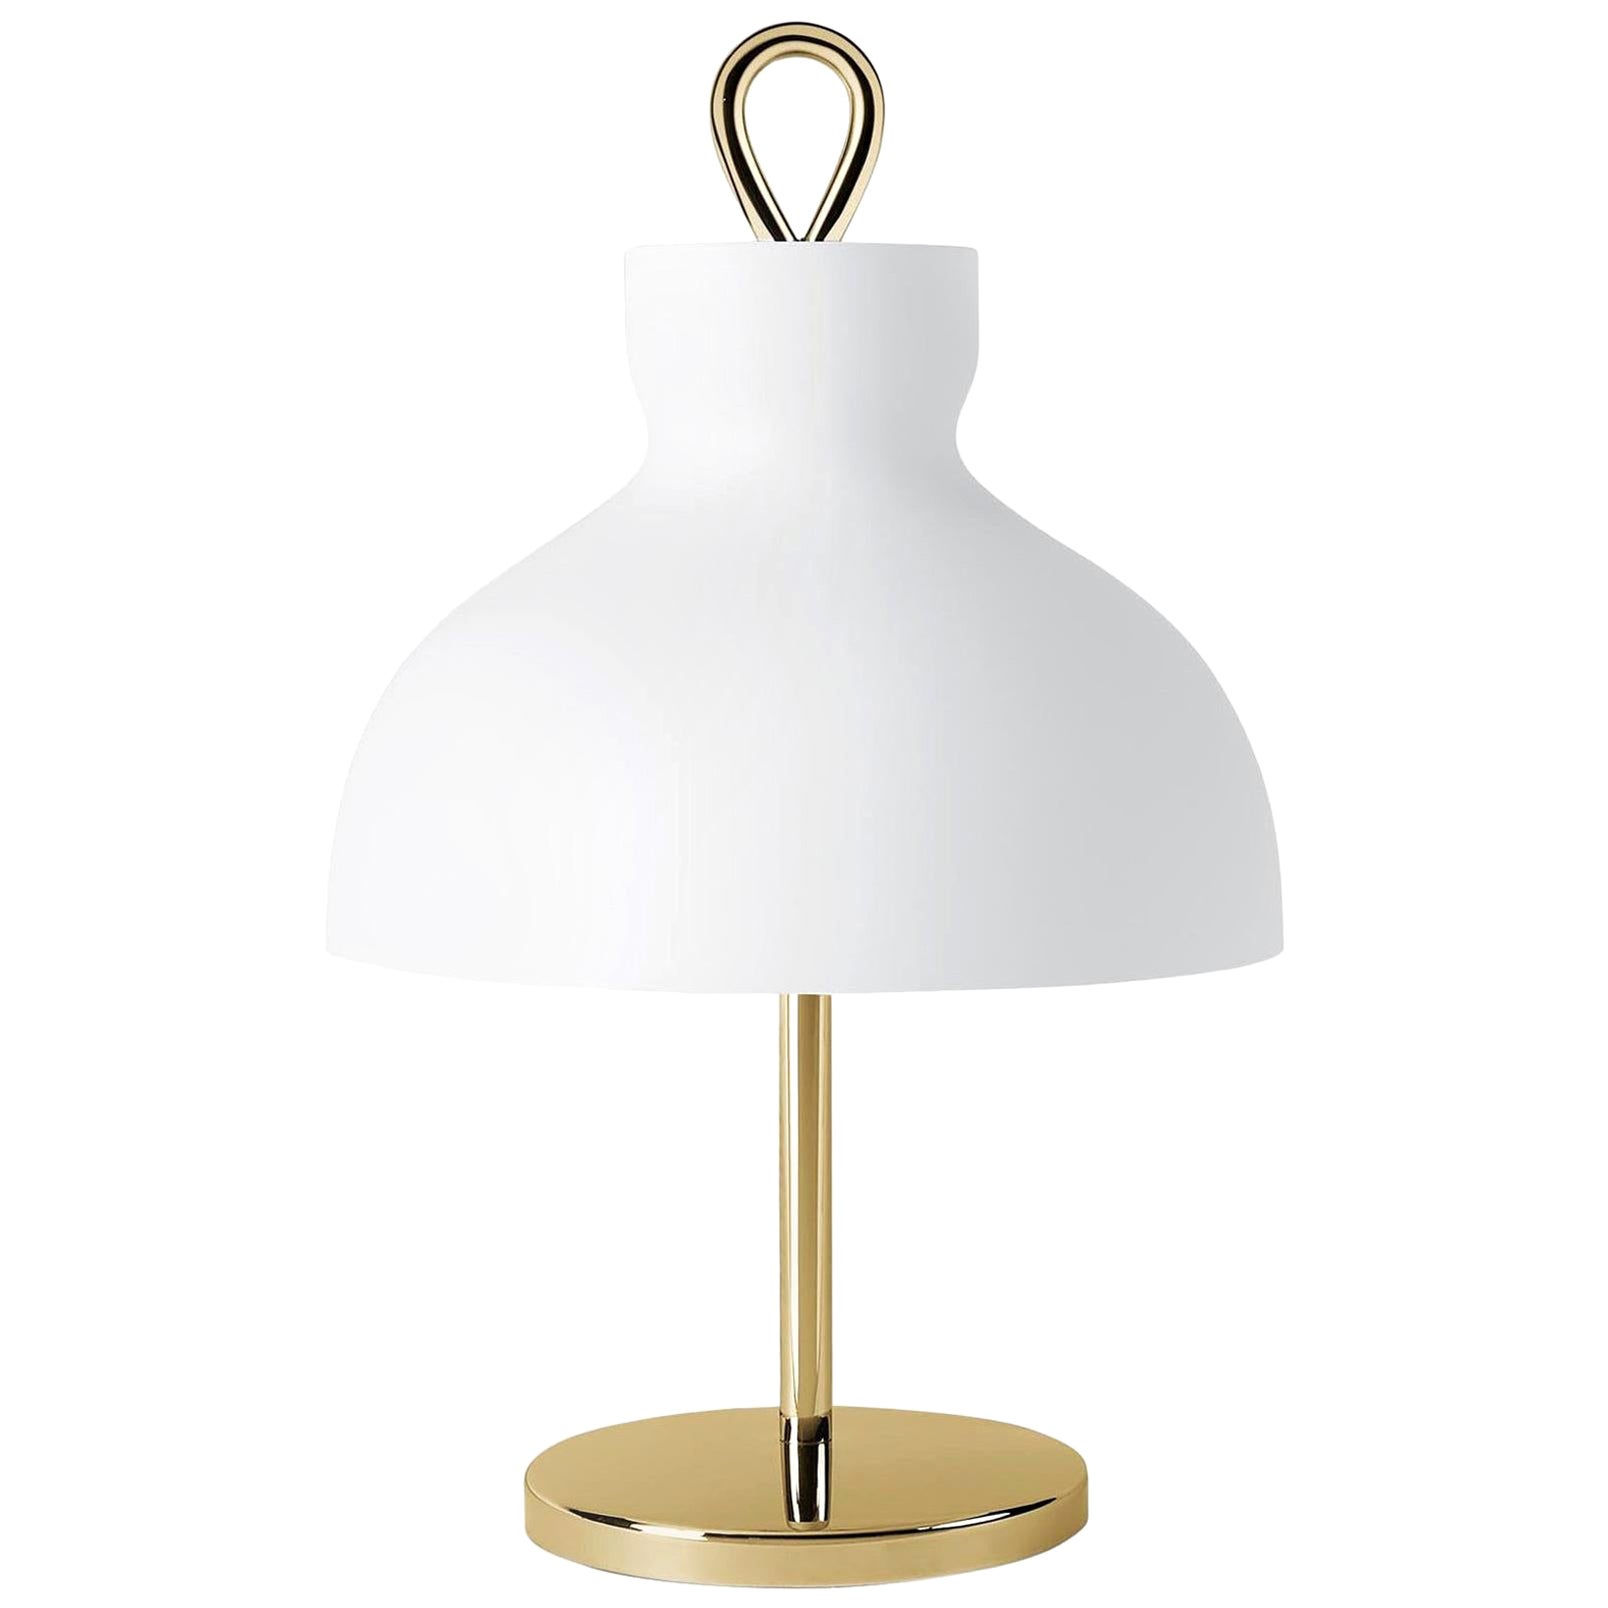 Ignazio Gardella 'Arenzano Bassa' Table Lamp in Brass and Glass In New Condition For Sale In Glendale, CA